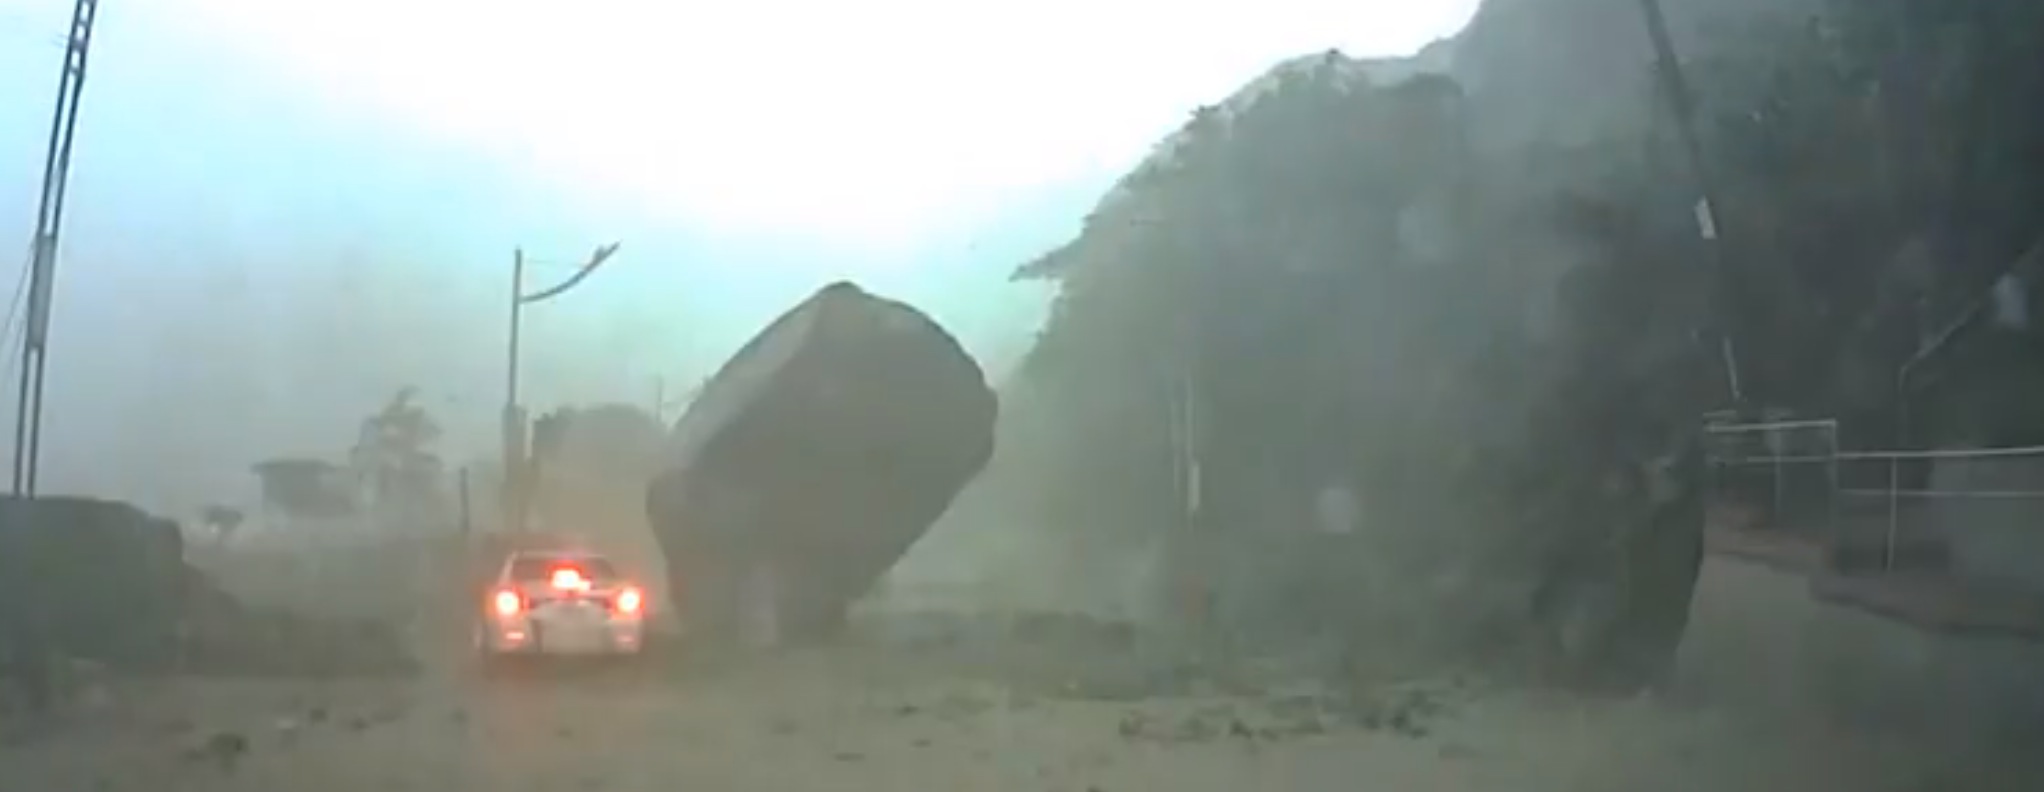 Video voiture ecrasee glissement de terrain